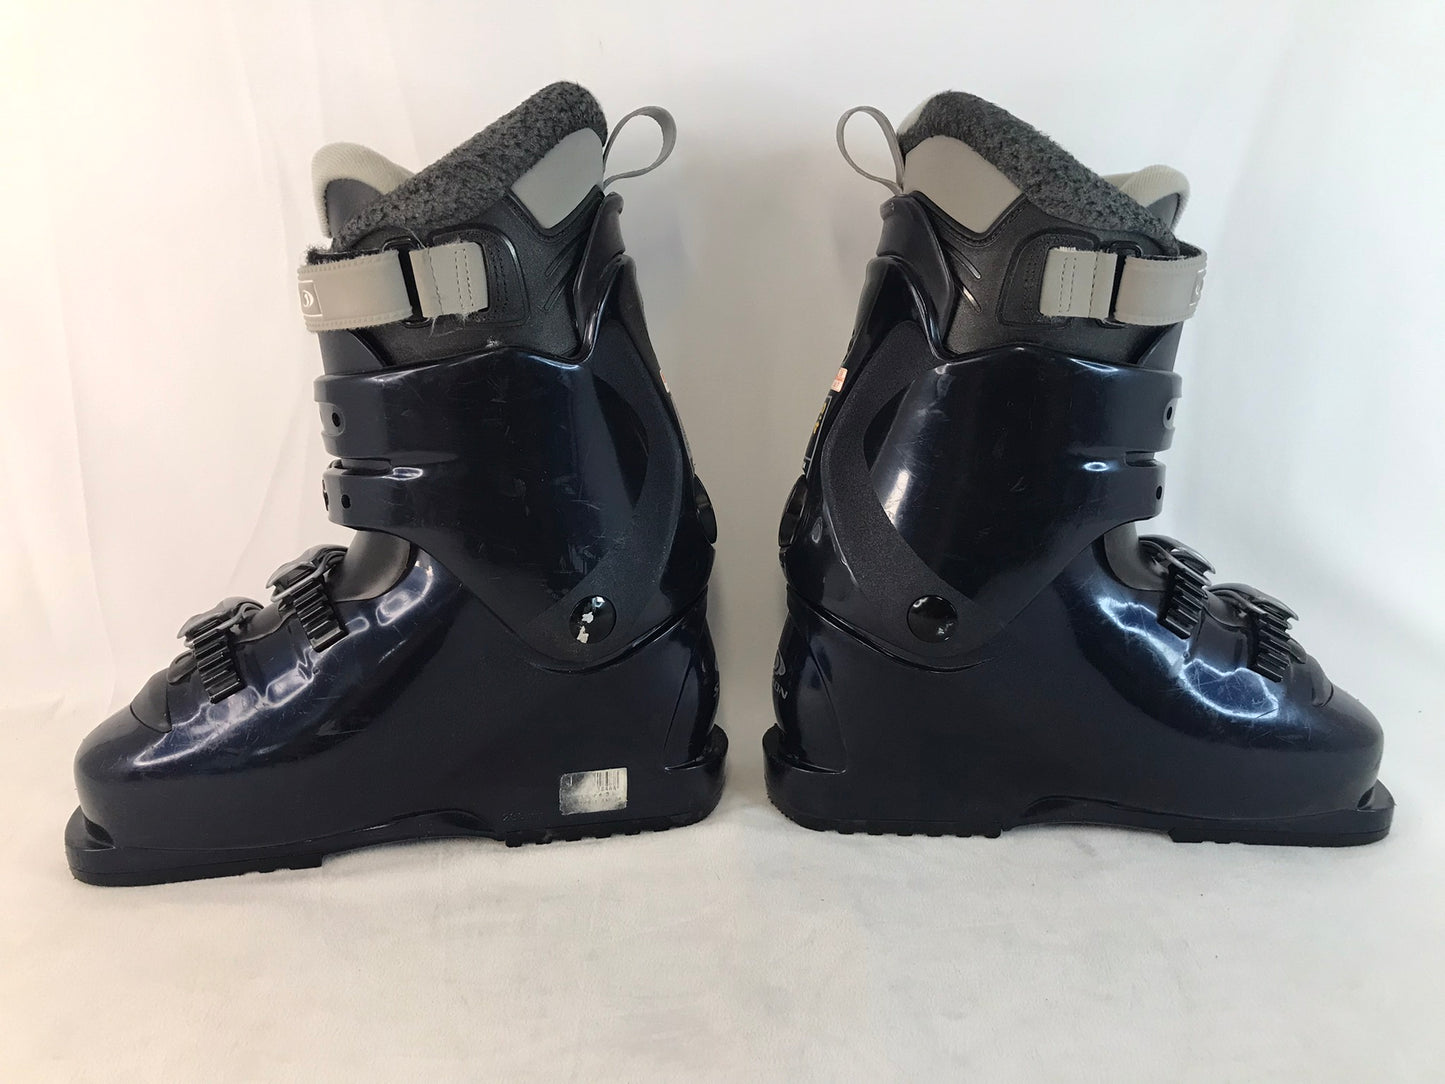 Ski Boots Mondo Size 24.5 Men's Size 6.5 Ladies Size 7.5 Salomon Marine Blue Excellent